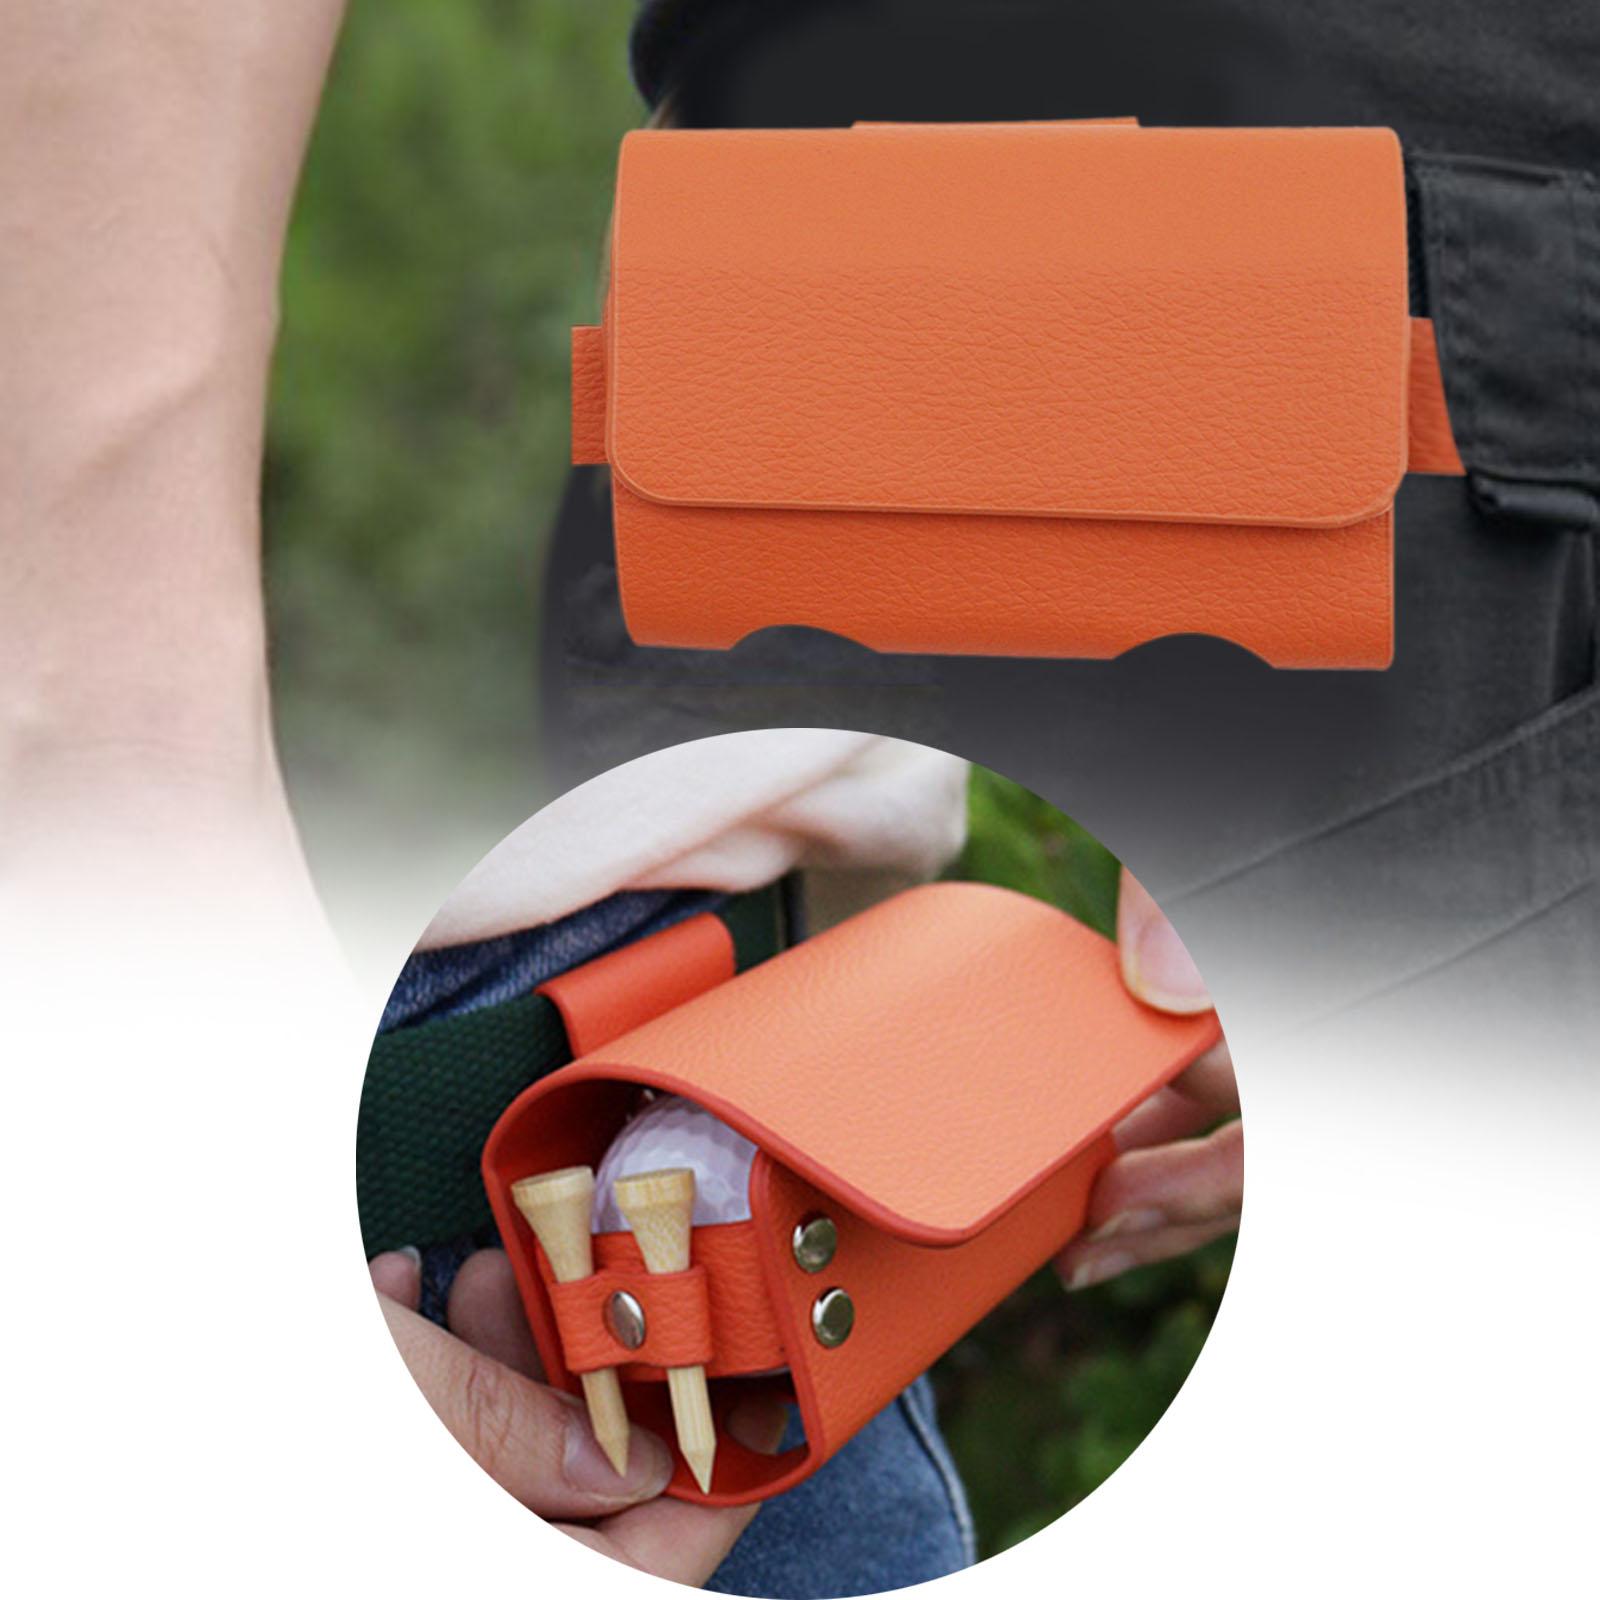 Portable Golf Ball Storage Bag Pouch Belt Waist Bag Organizer Unisex Holder Orange